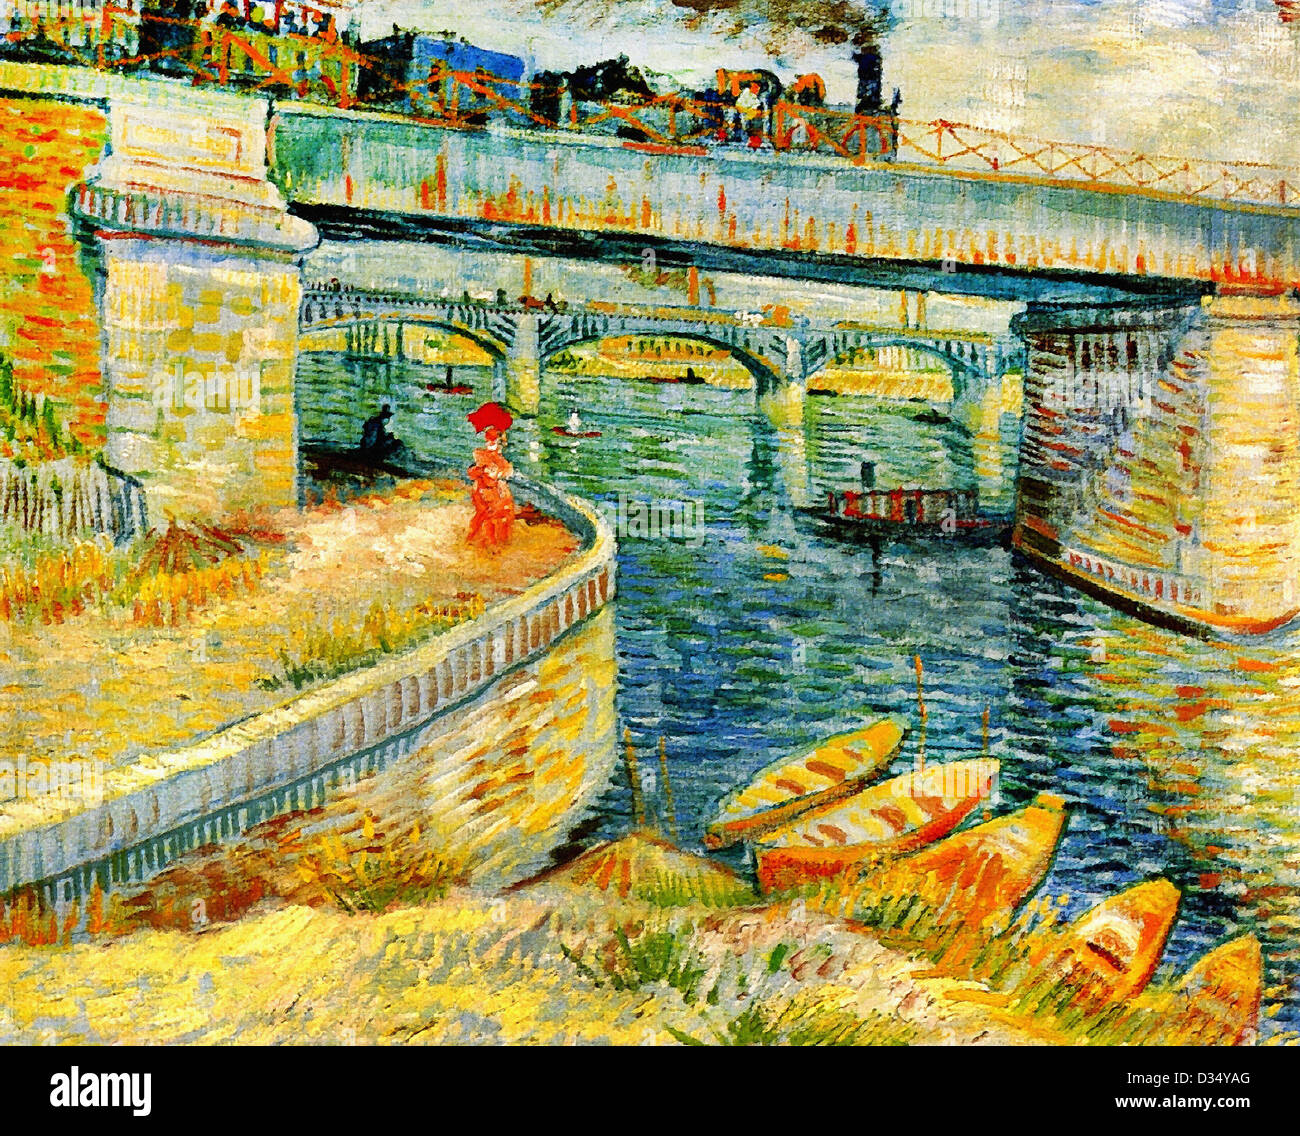 Vincent Van Gogh, Brücken über die Seine bei Asnieres. 1887. Post-Impressionismus. Öl auf Leinwand. Bührle-Stiftung, Zürich Stockfoto